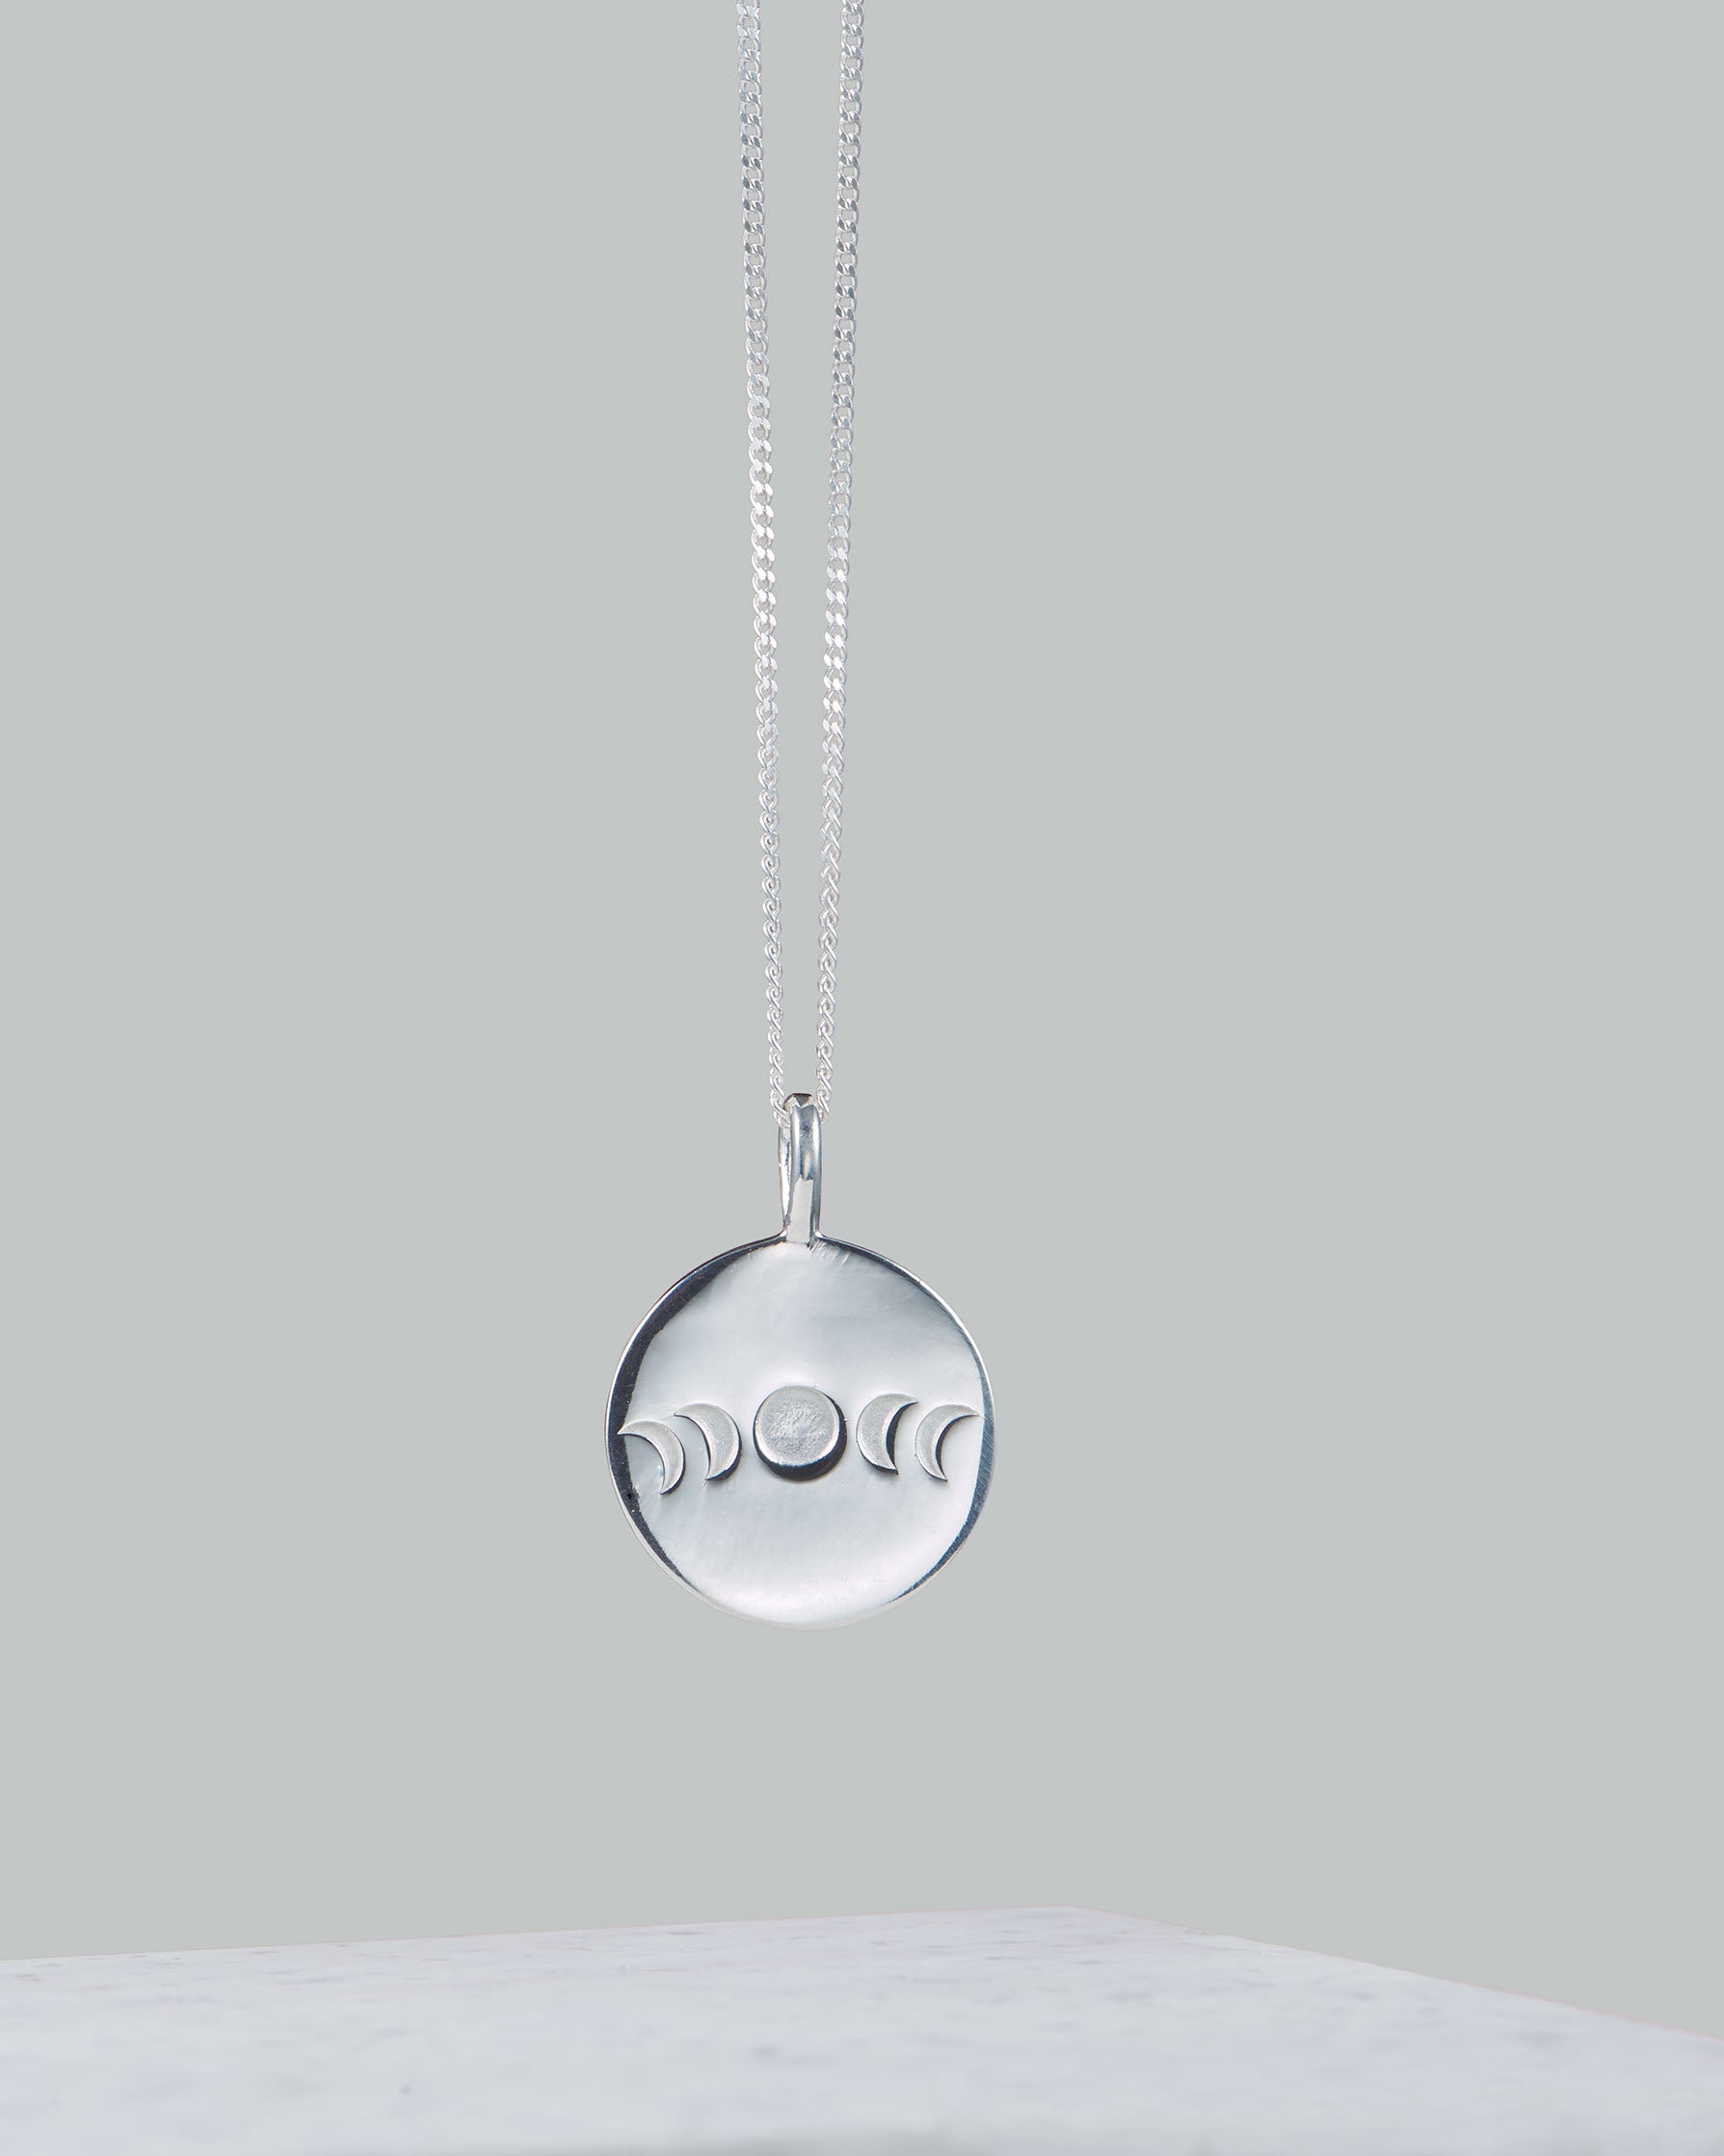 MOON CHILD Necklace | Plättchenkette mit Mondphasen | Handgemachte Kette | 925 Silber - wasaserfest | Fair und umweltschonend auf Bali handgefertigt | VERLAN Jewellery | Fahrfashion | naltur clothing